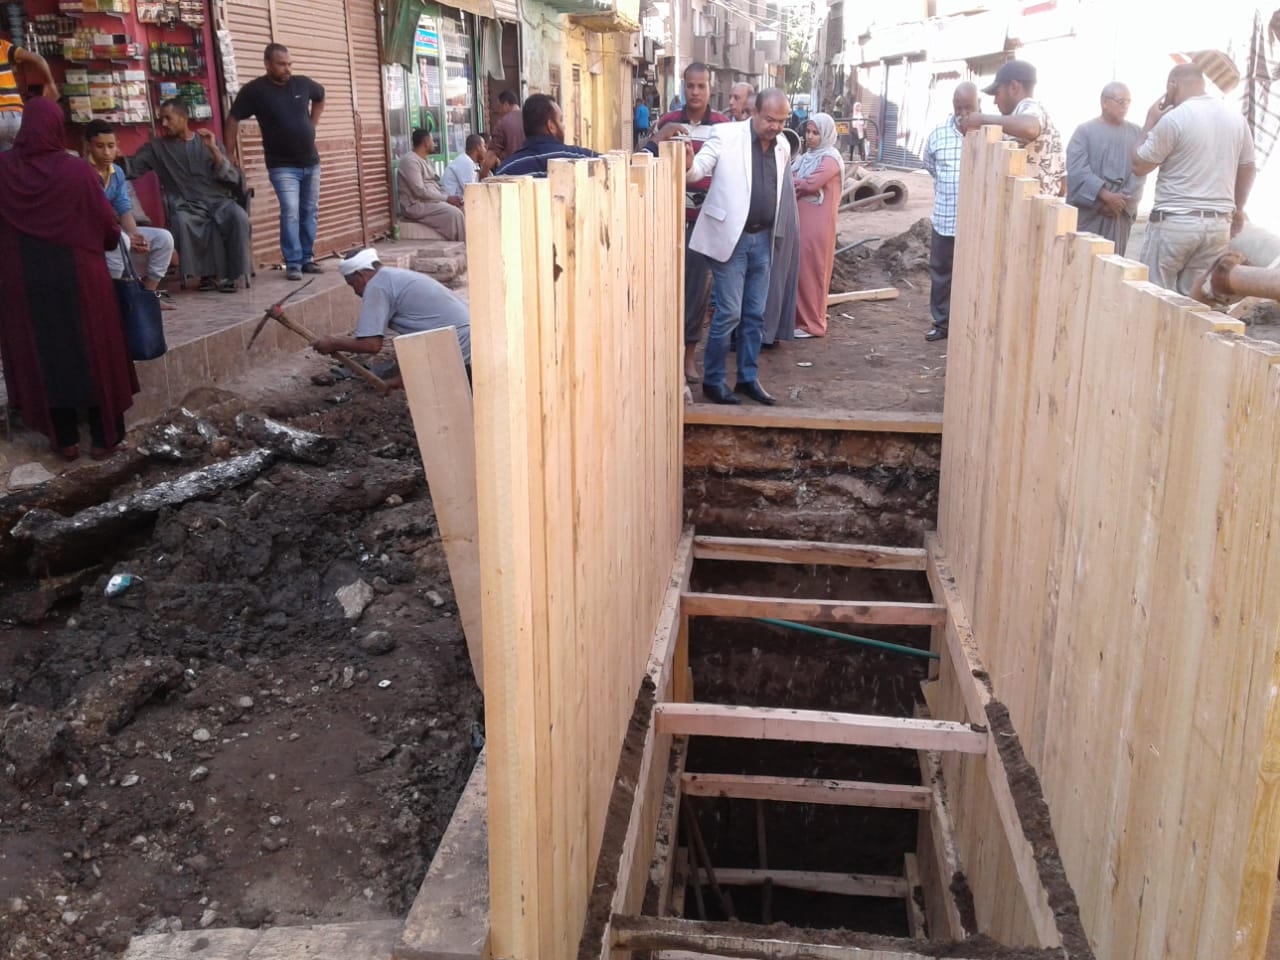 شاهد أعمال إصلاح هبوط مطابق الصرف الصحي بشارع الزلفي بأرمنت الحيط غرب الأقصر (3)